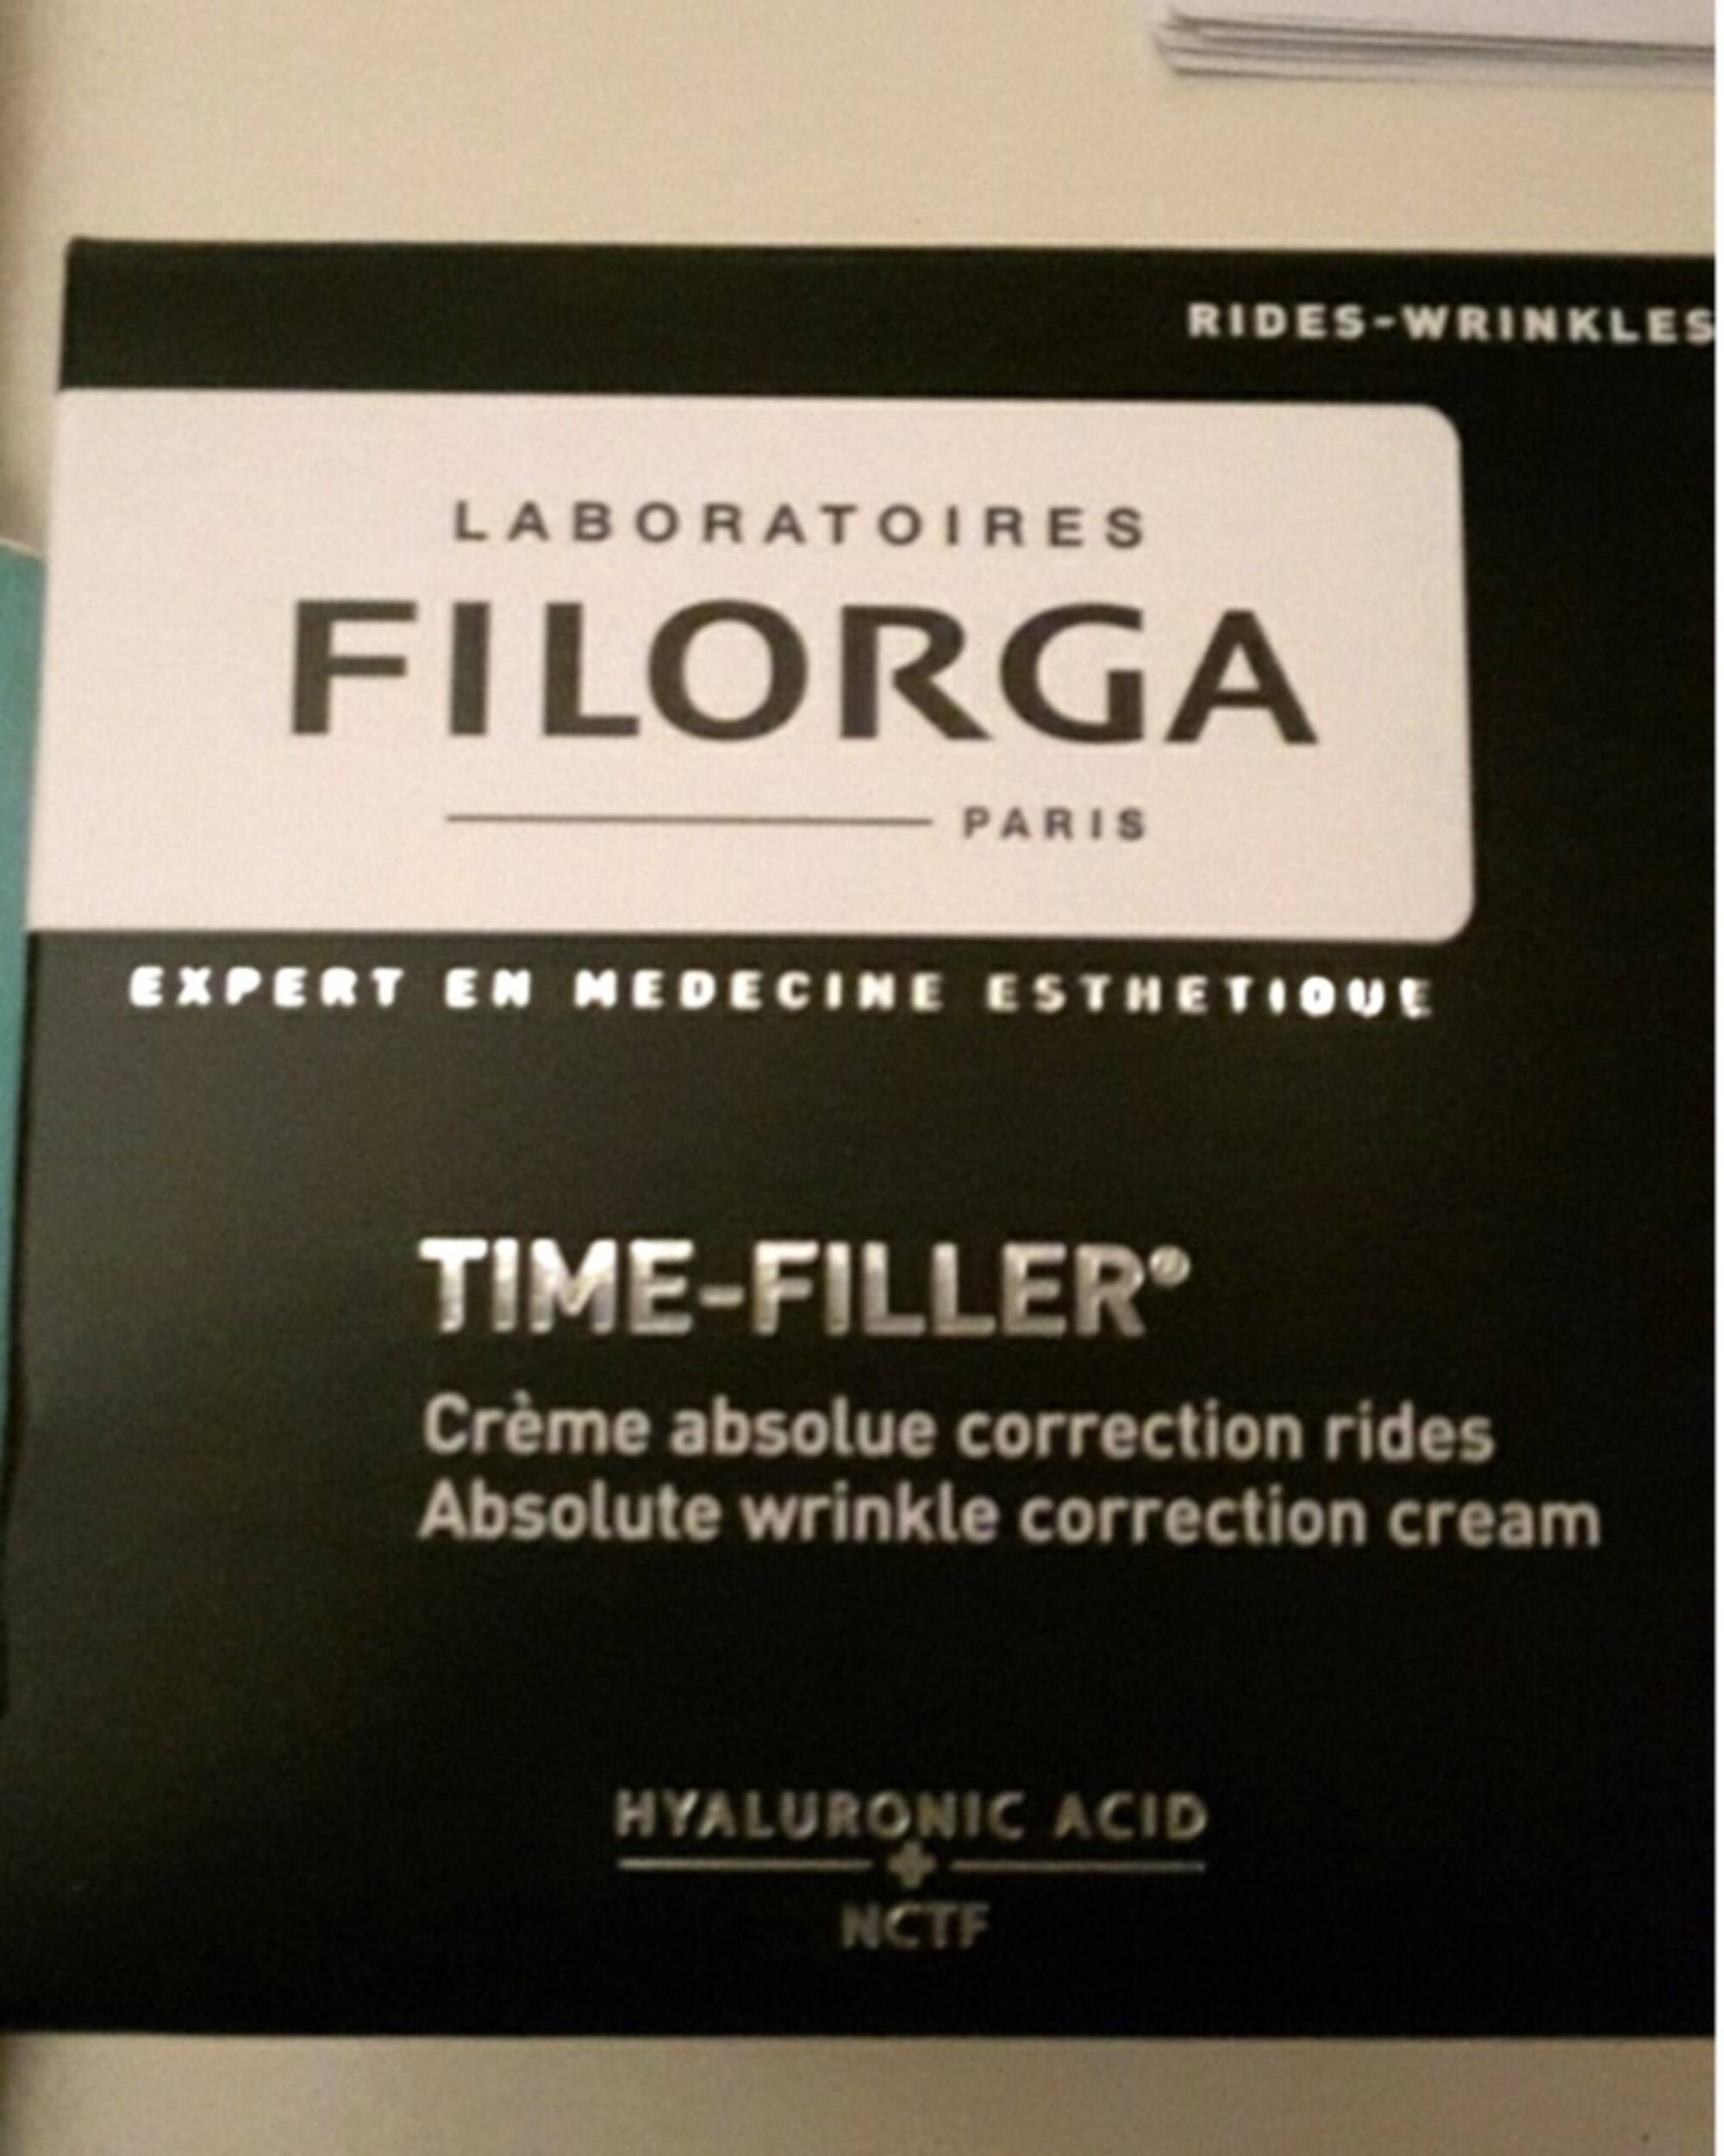 FILORGA - Time-filler - Crème absolue correction rides